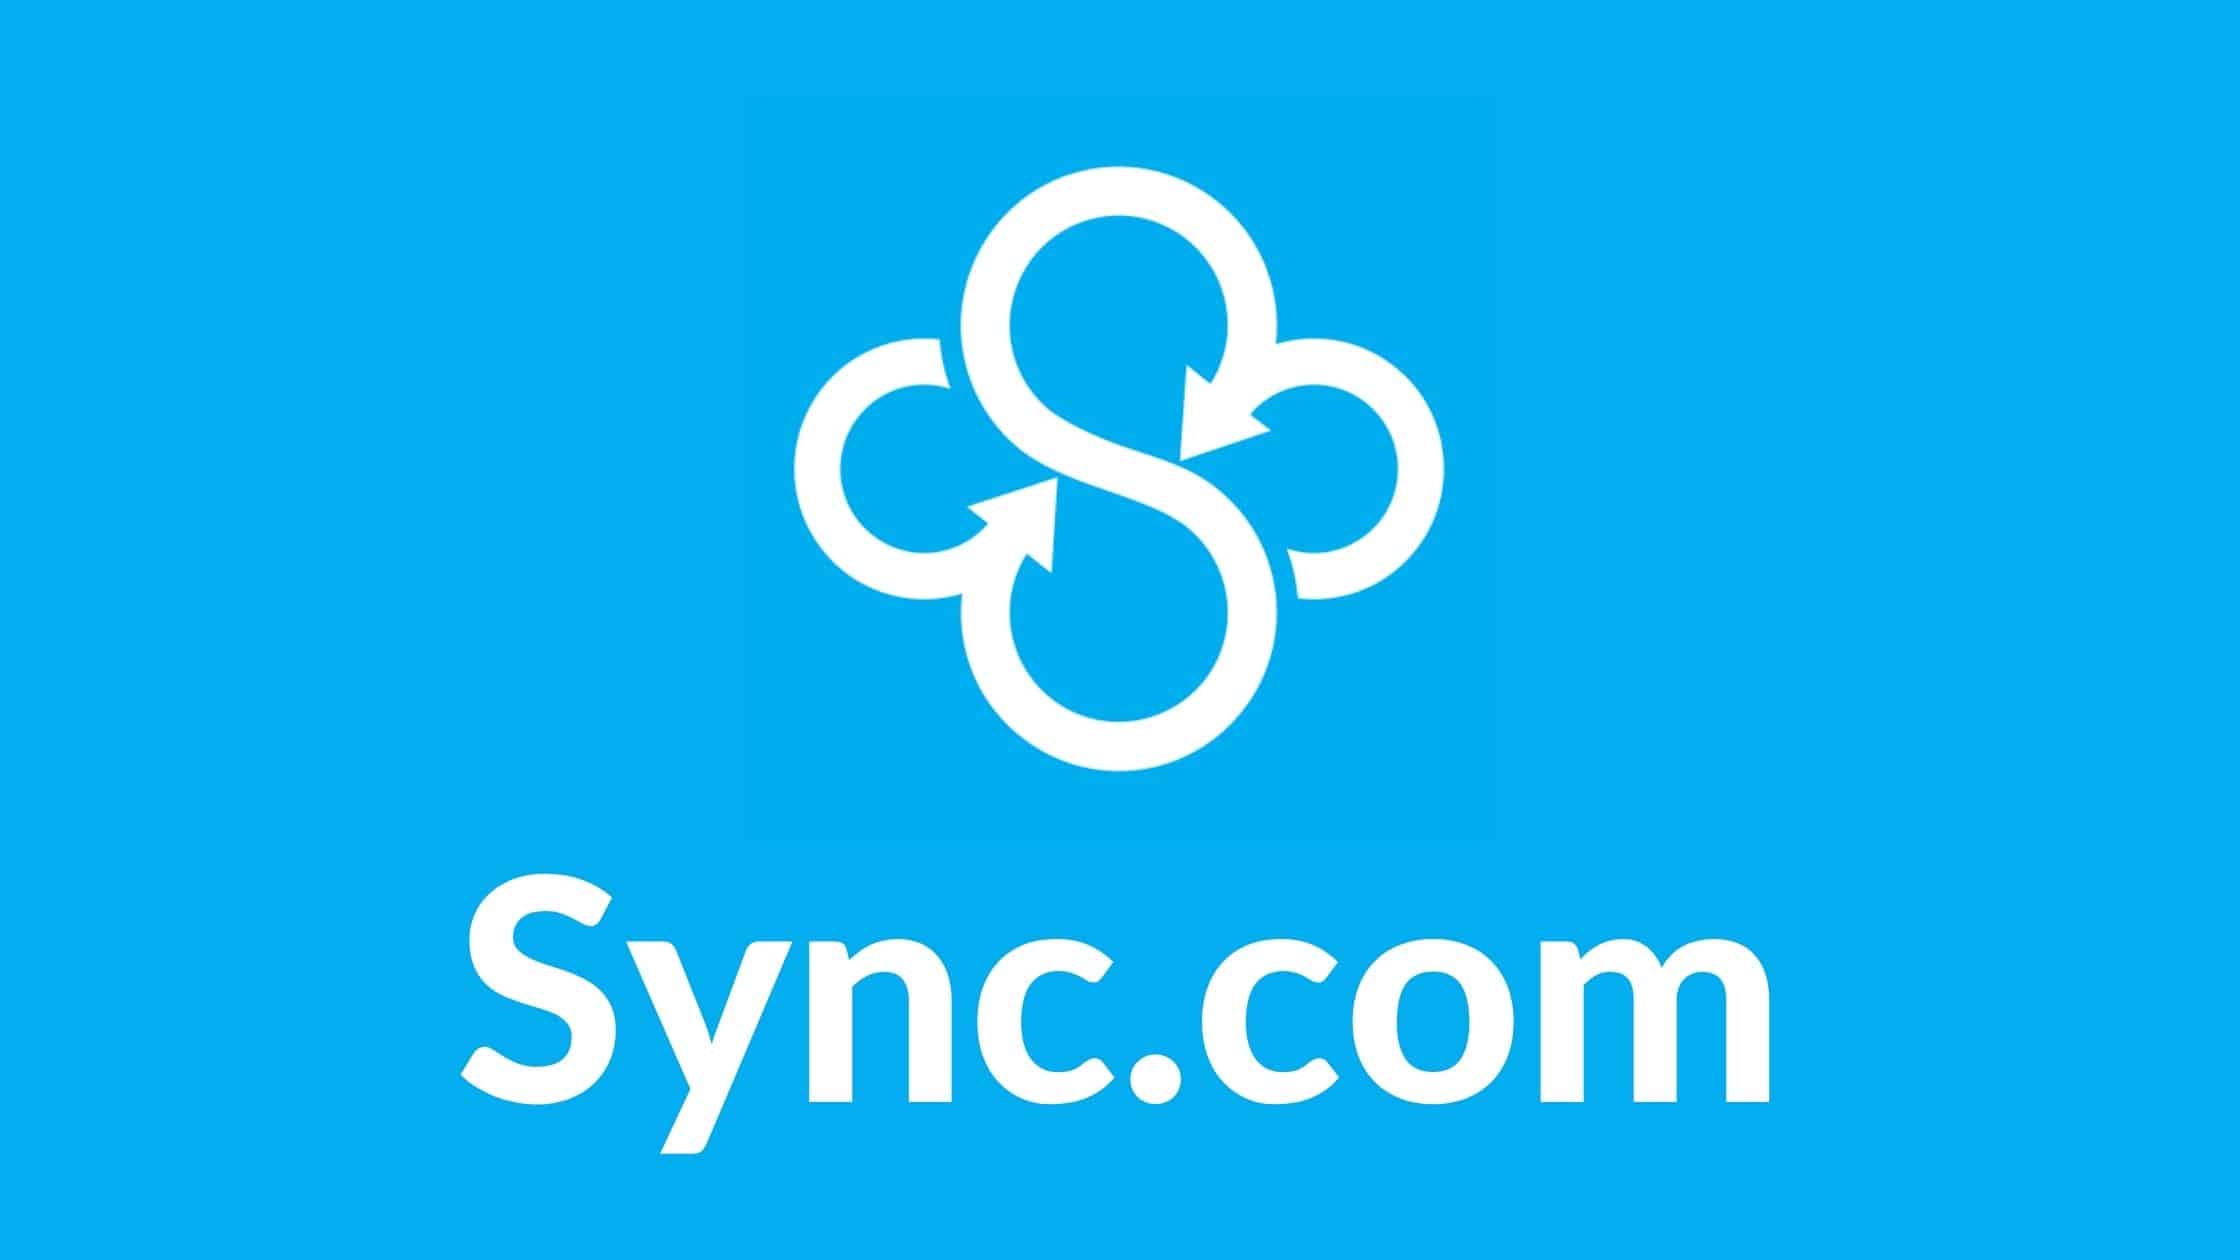 05 Sync.com